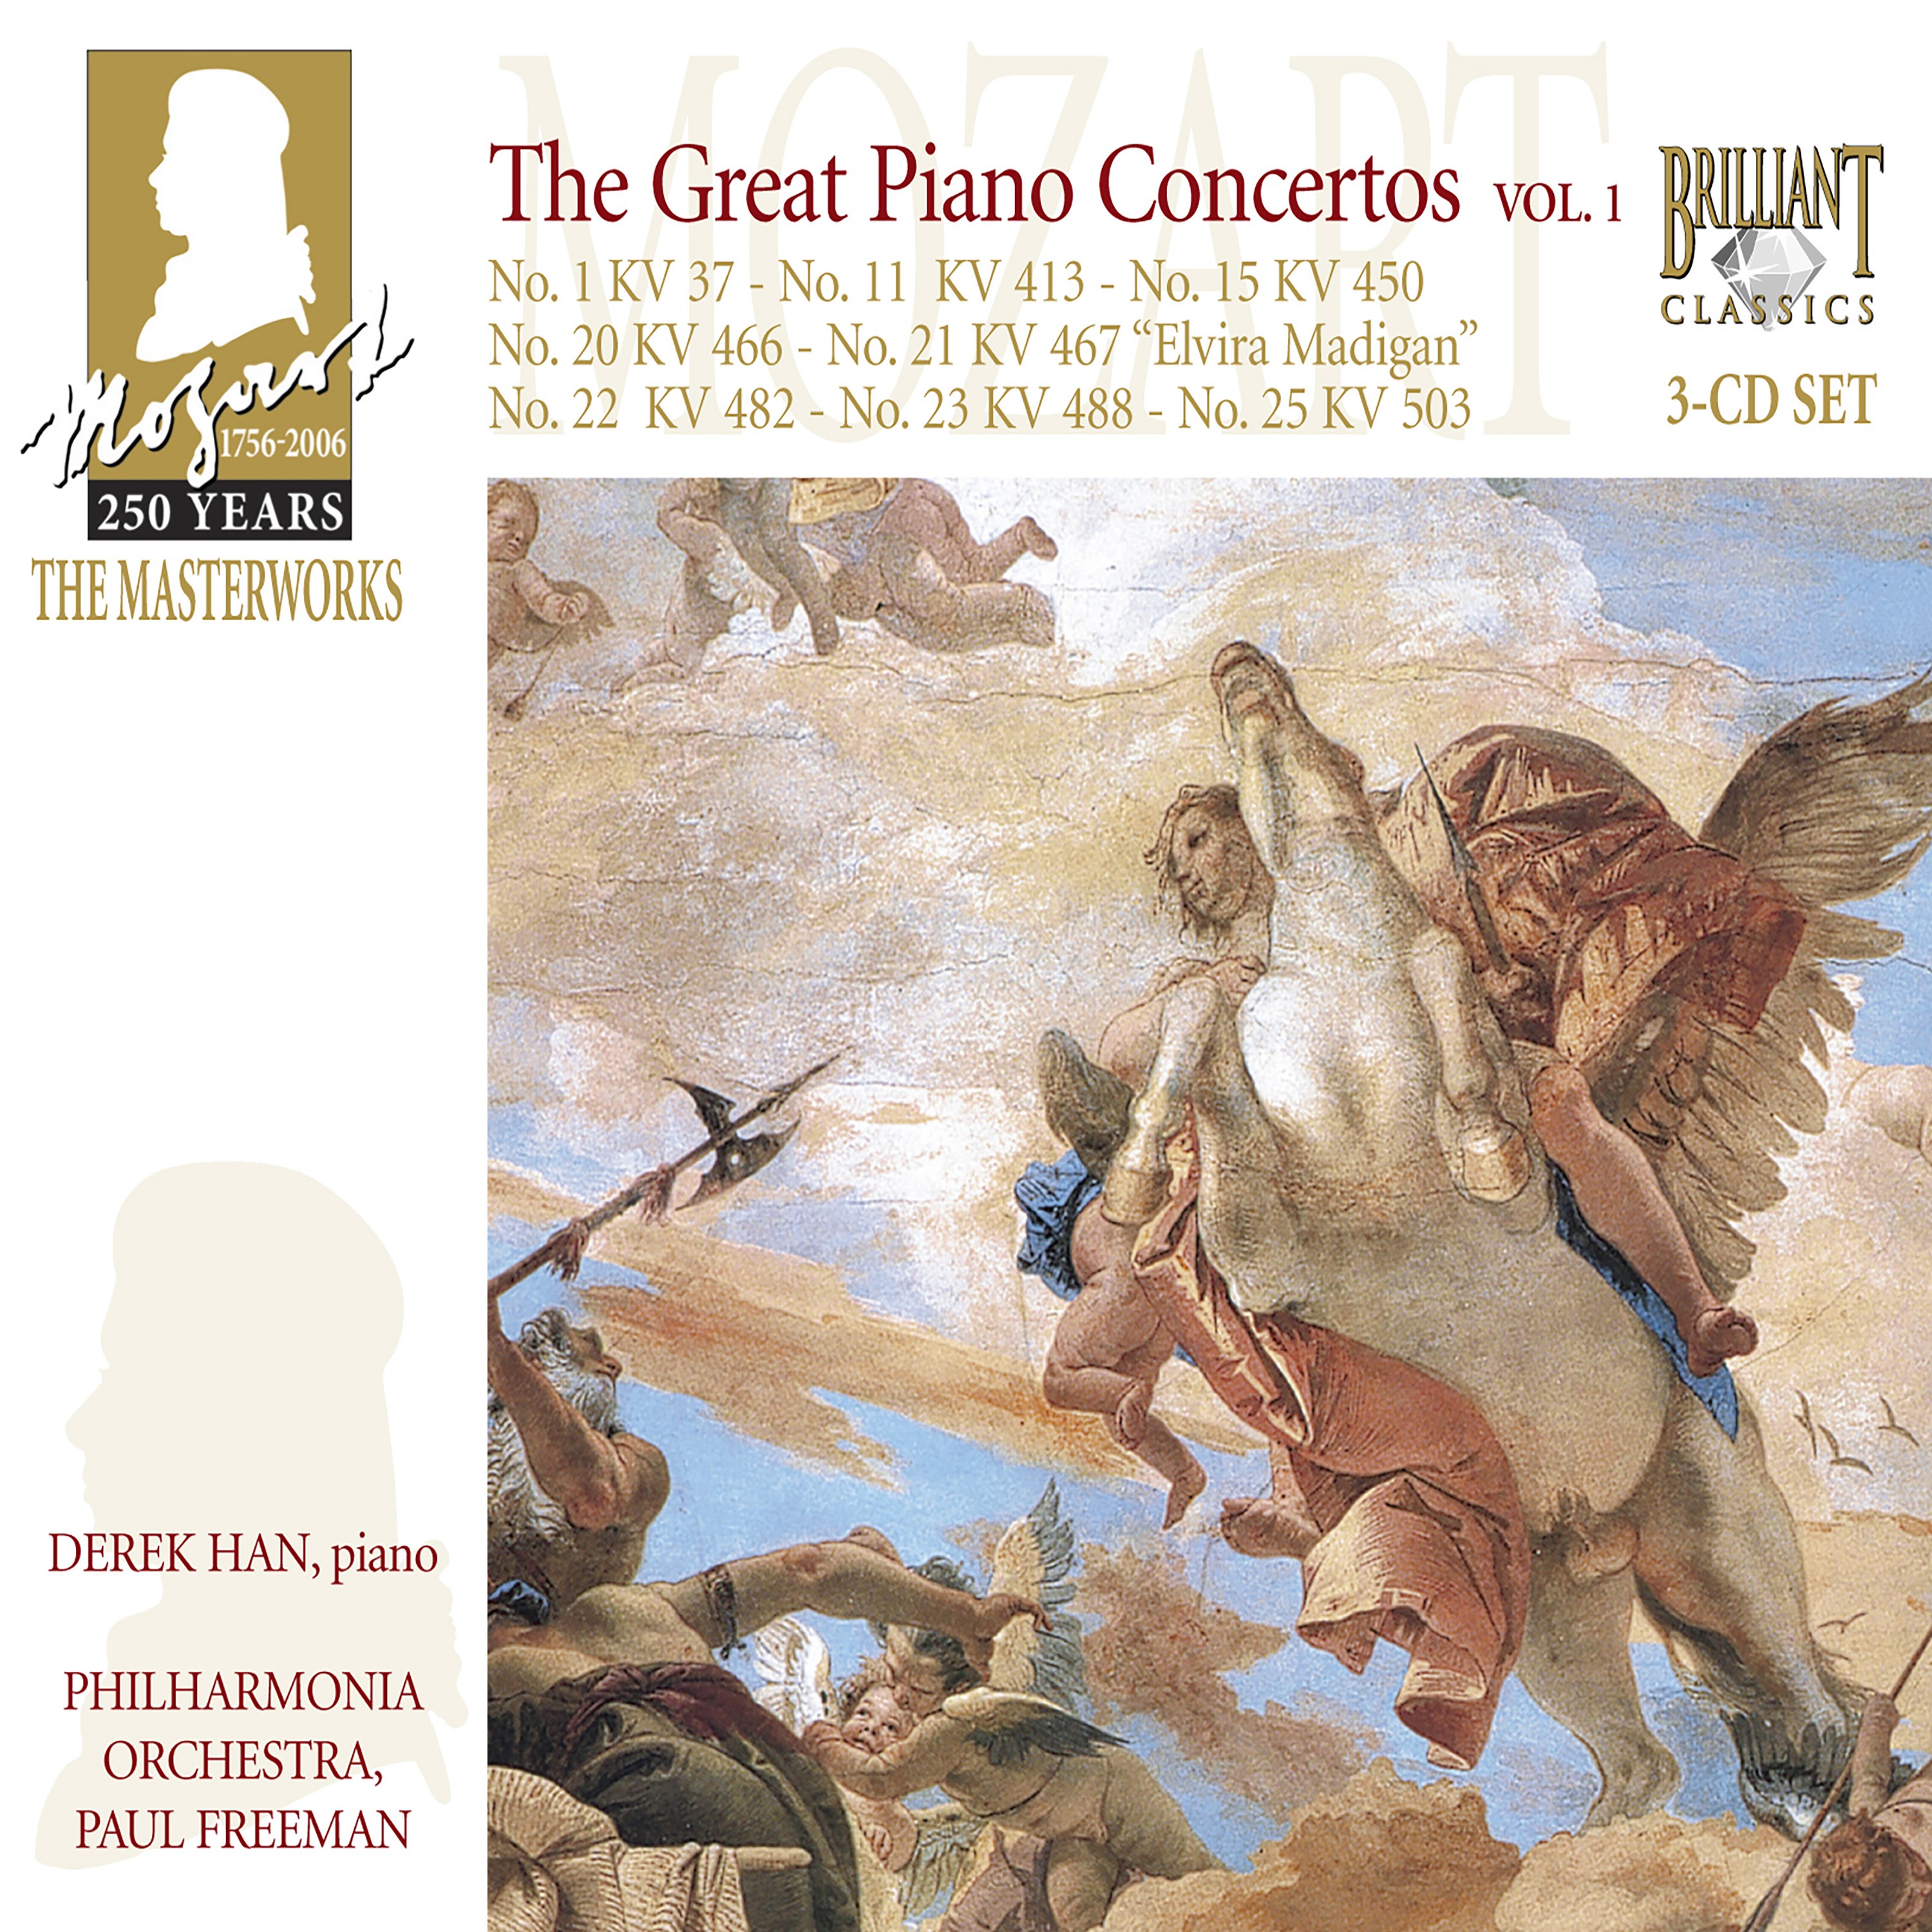 Piano Concerto No. 20 In D Minor, K. 466: I. Allegro